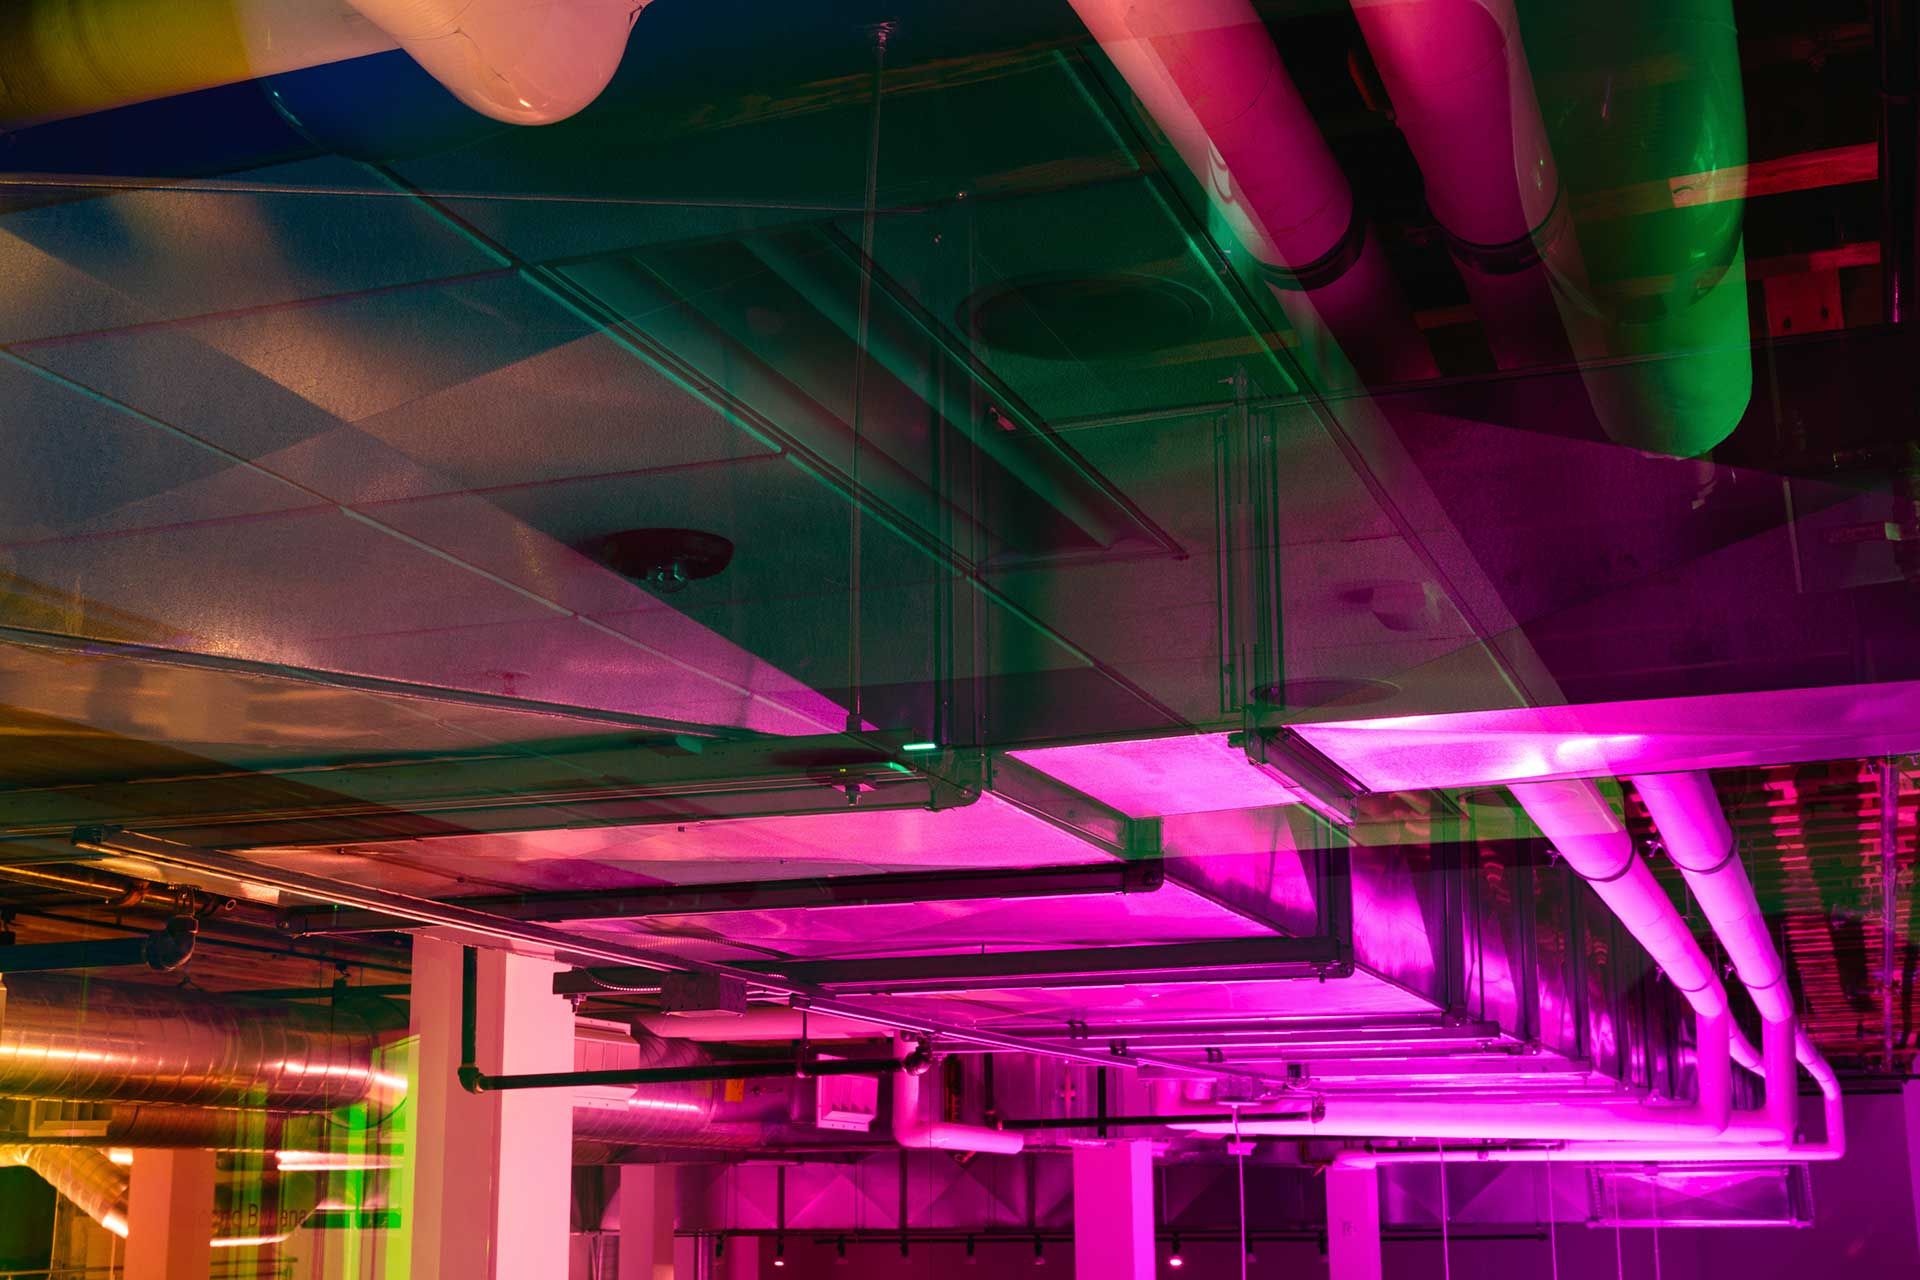 Une lumière rose est projetée sur le plafond pour montrer les tuyaux de climatisation